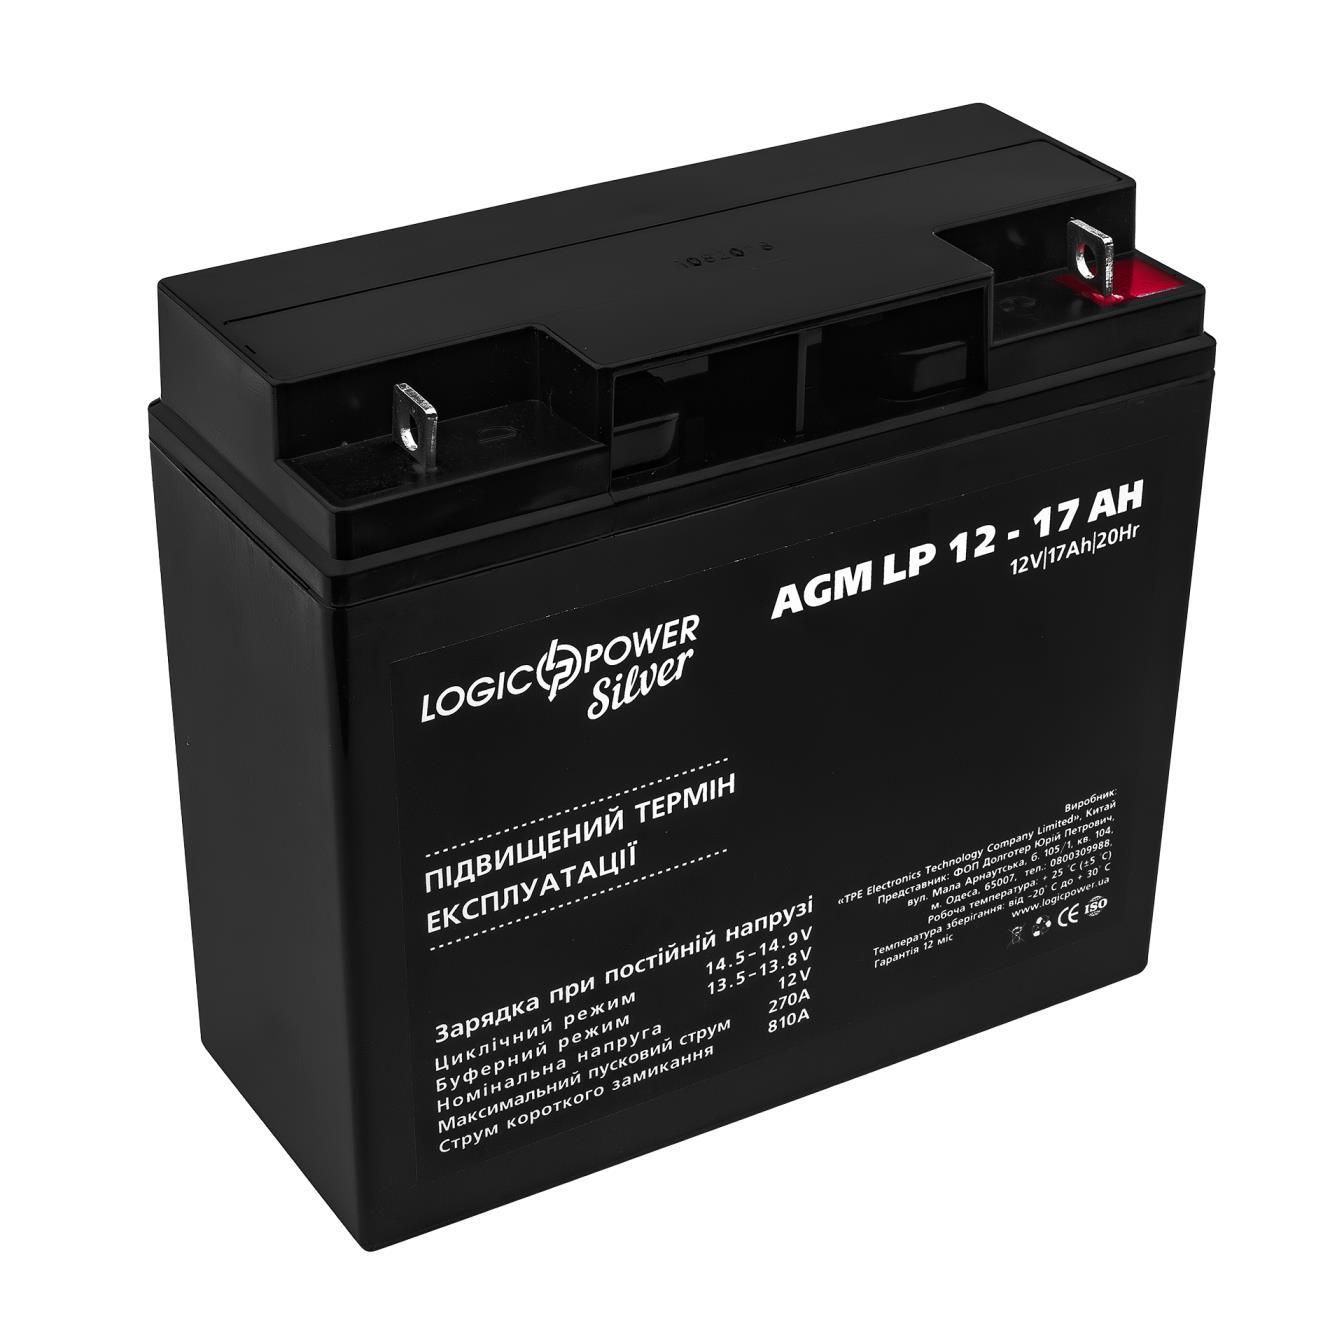 Акумулятор свинцево-кислотний LogicPower AGM LP 12V - 17 Ah Silver (3329)